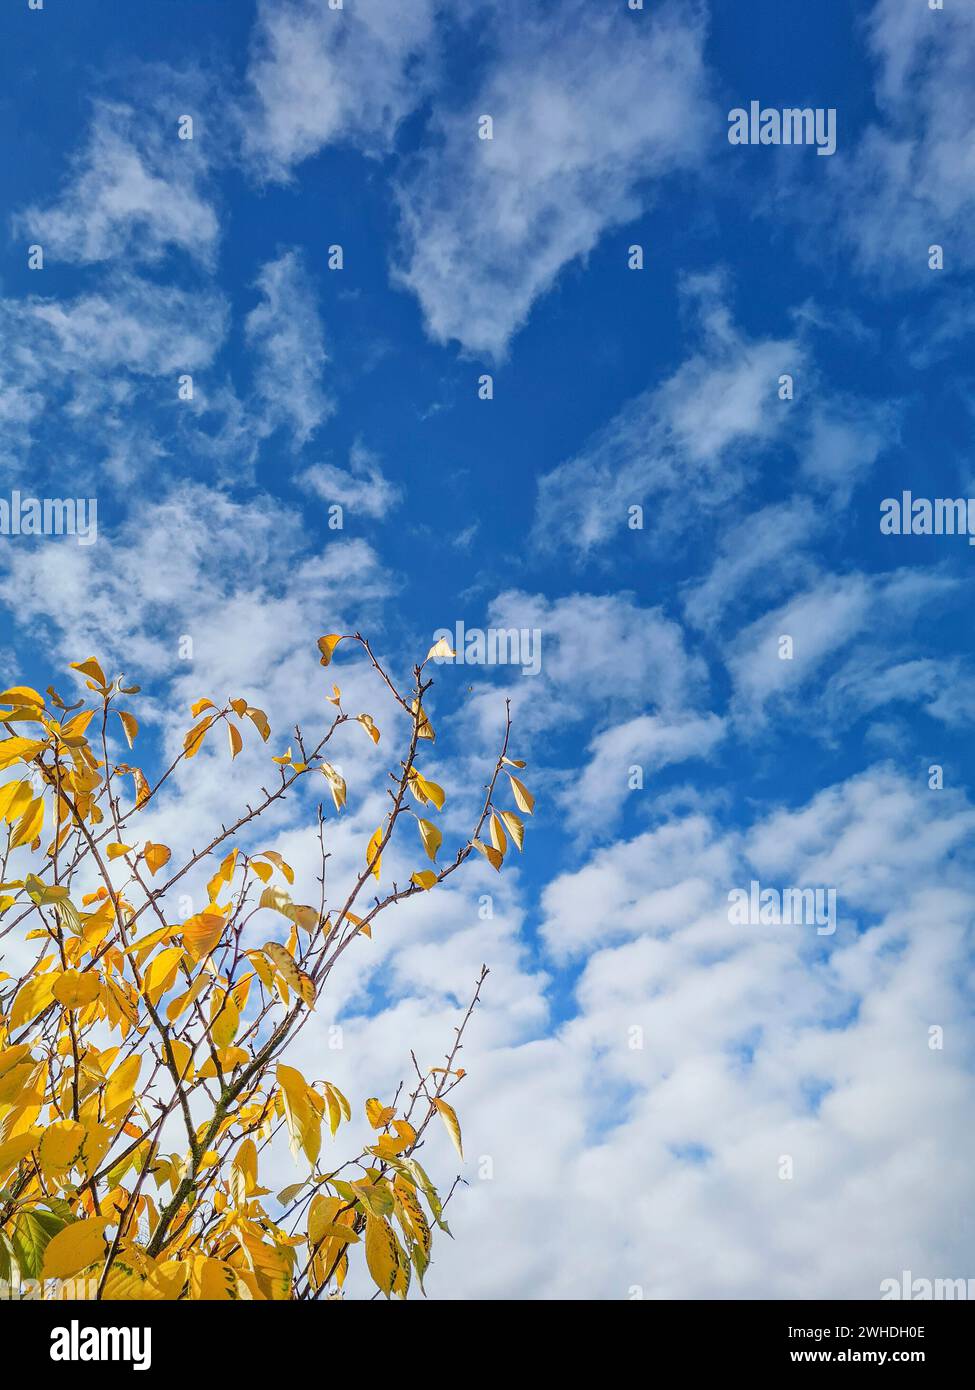 Cielo blu con nuvole bianche in una giornata di sole in autunno con foglie gialle alla luce del sole in primo piano Foto Stock